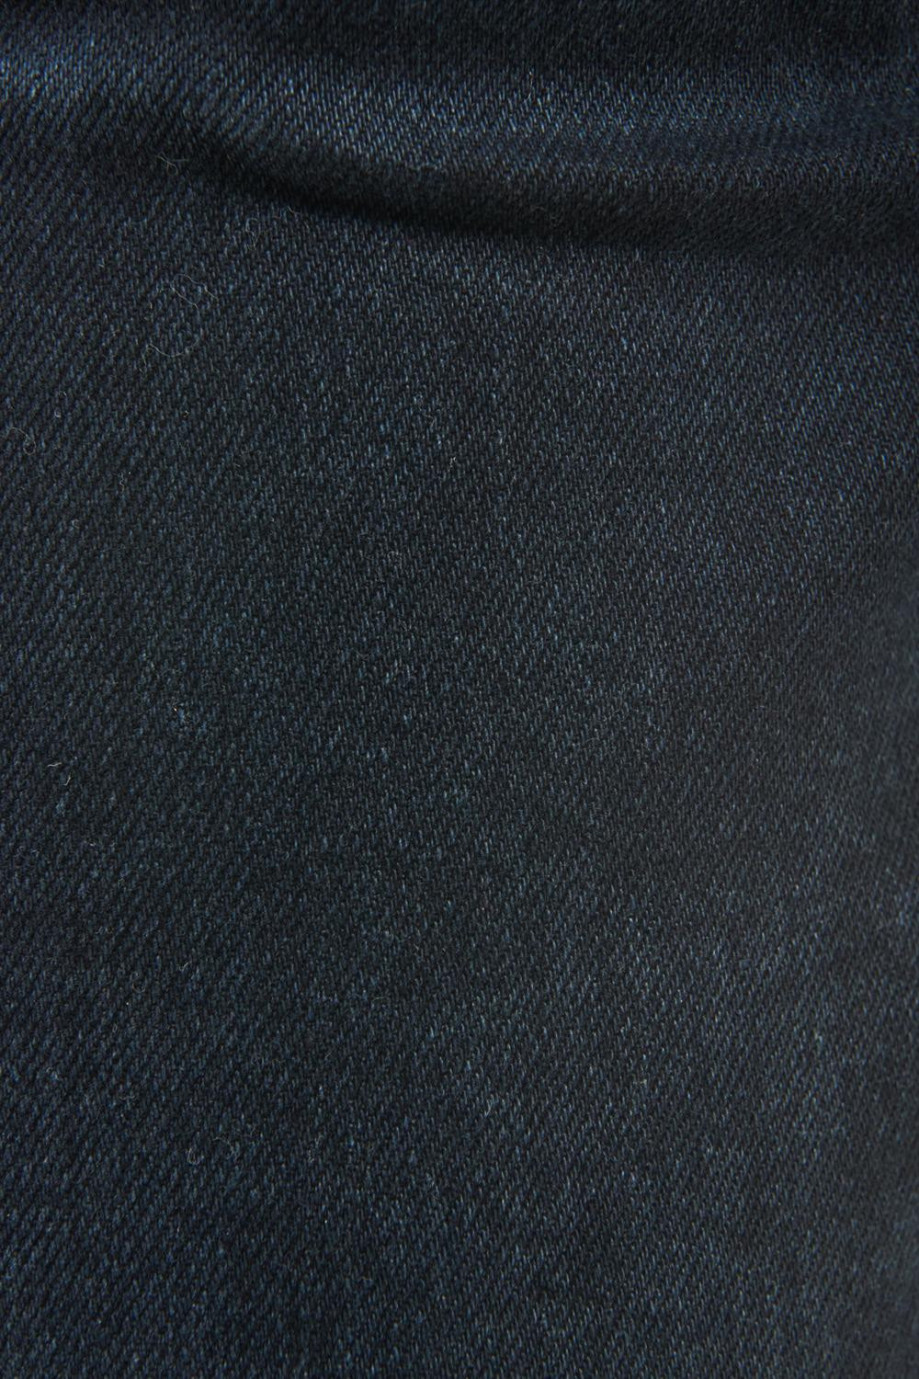 Jean slim azul intenso con costuras cafés, tiro bajo y ajuste ceñido